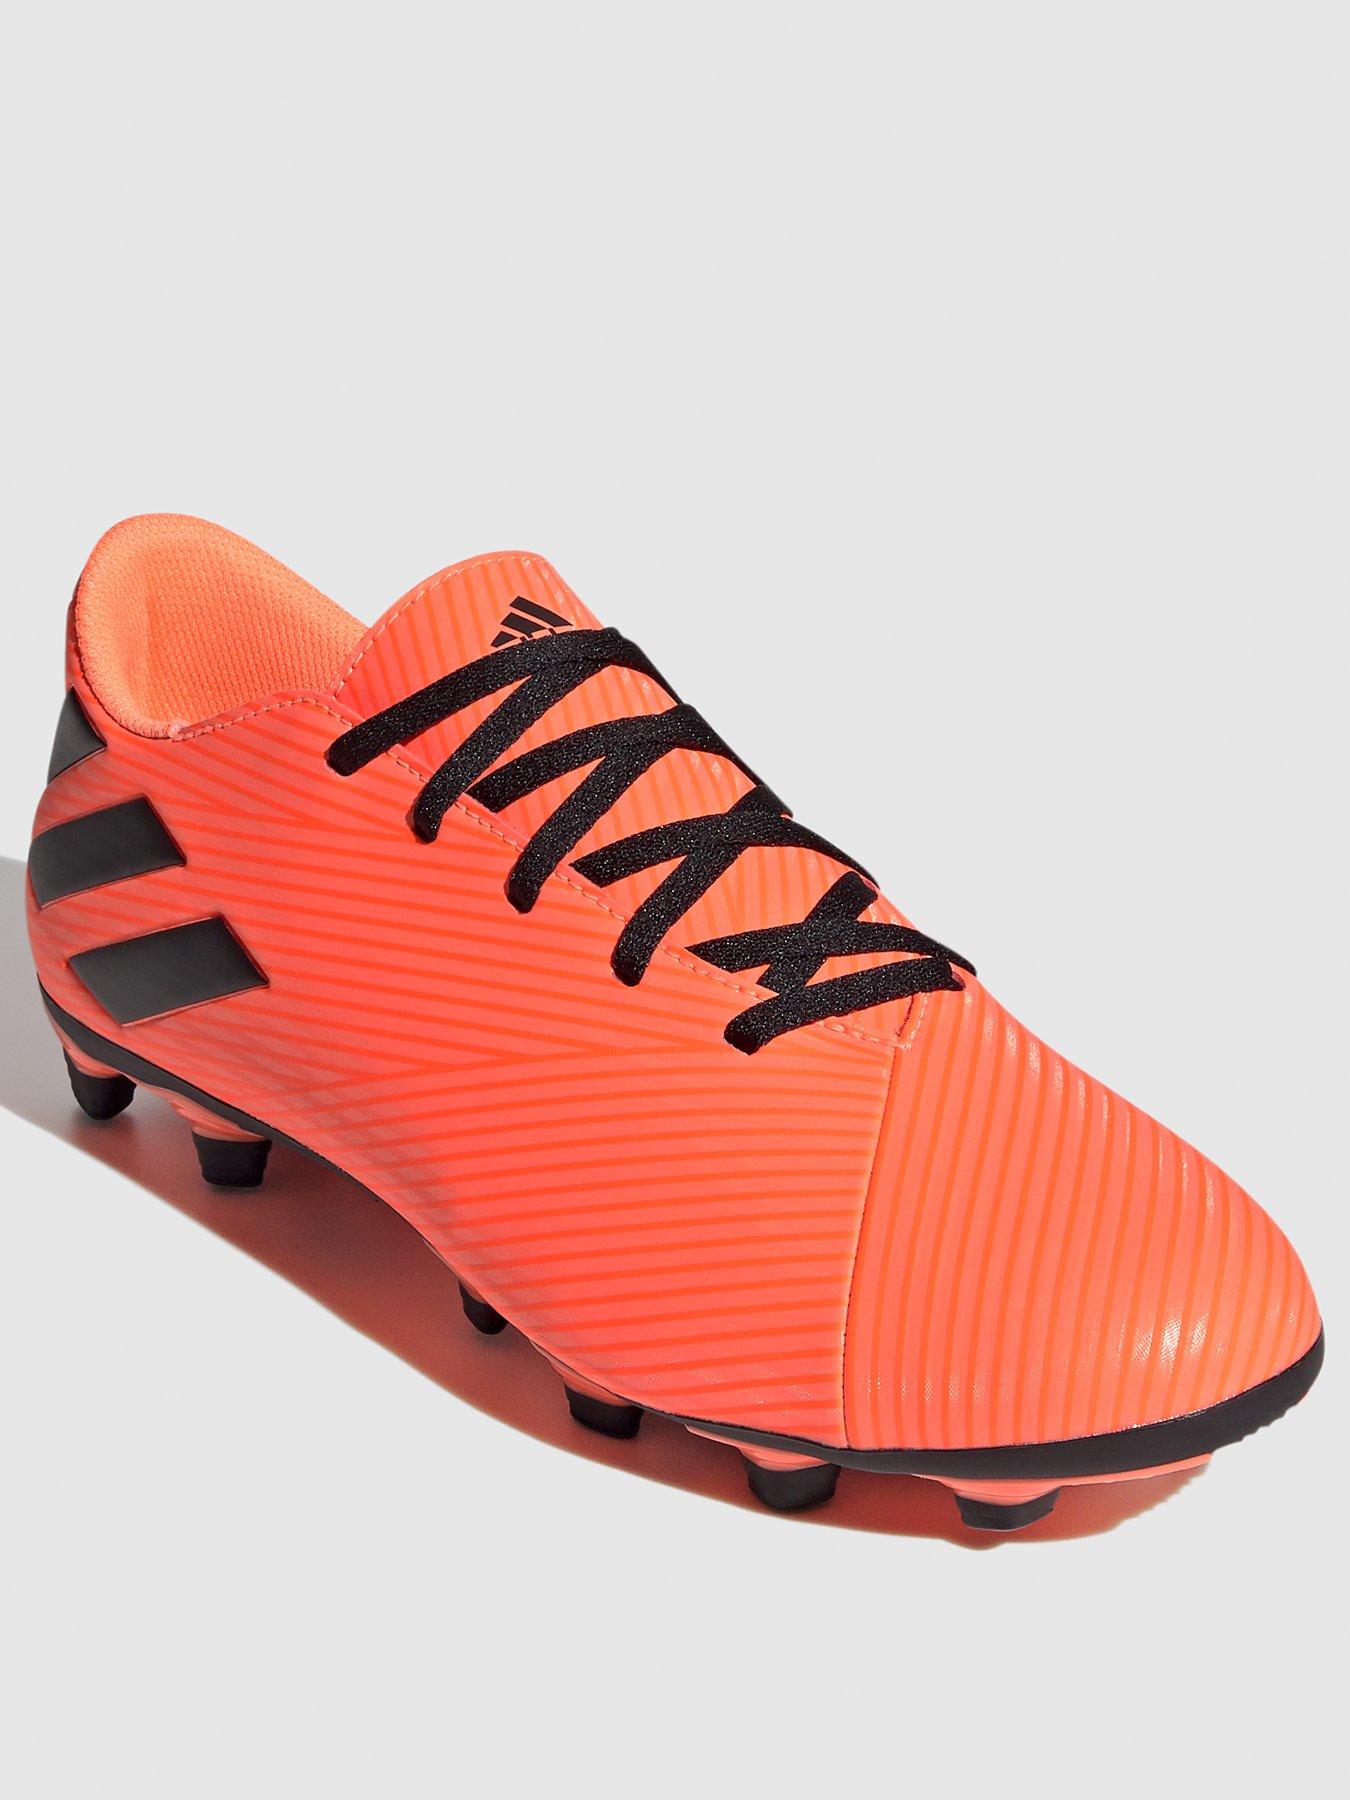 adidas boots football 218